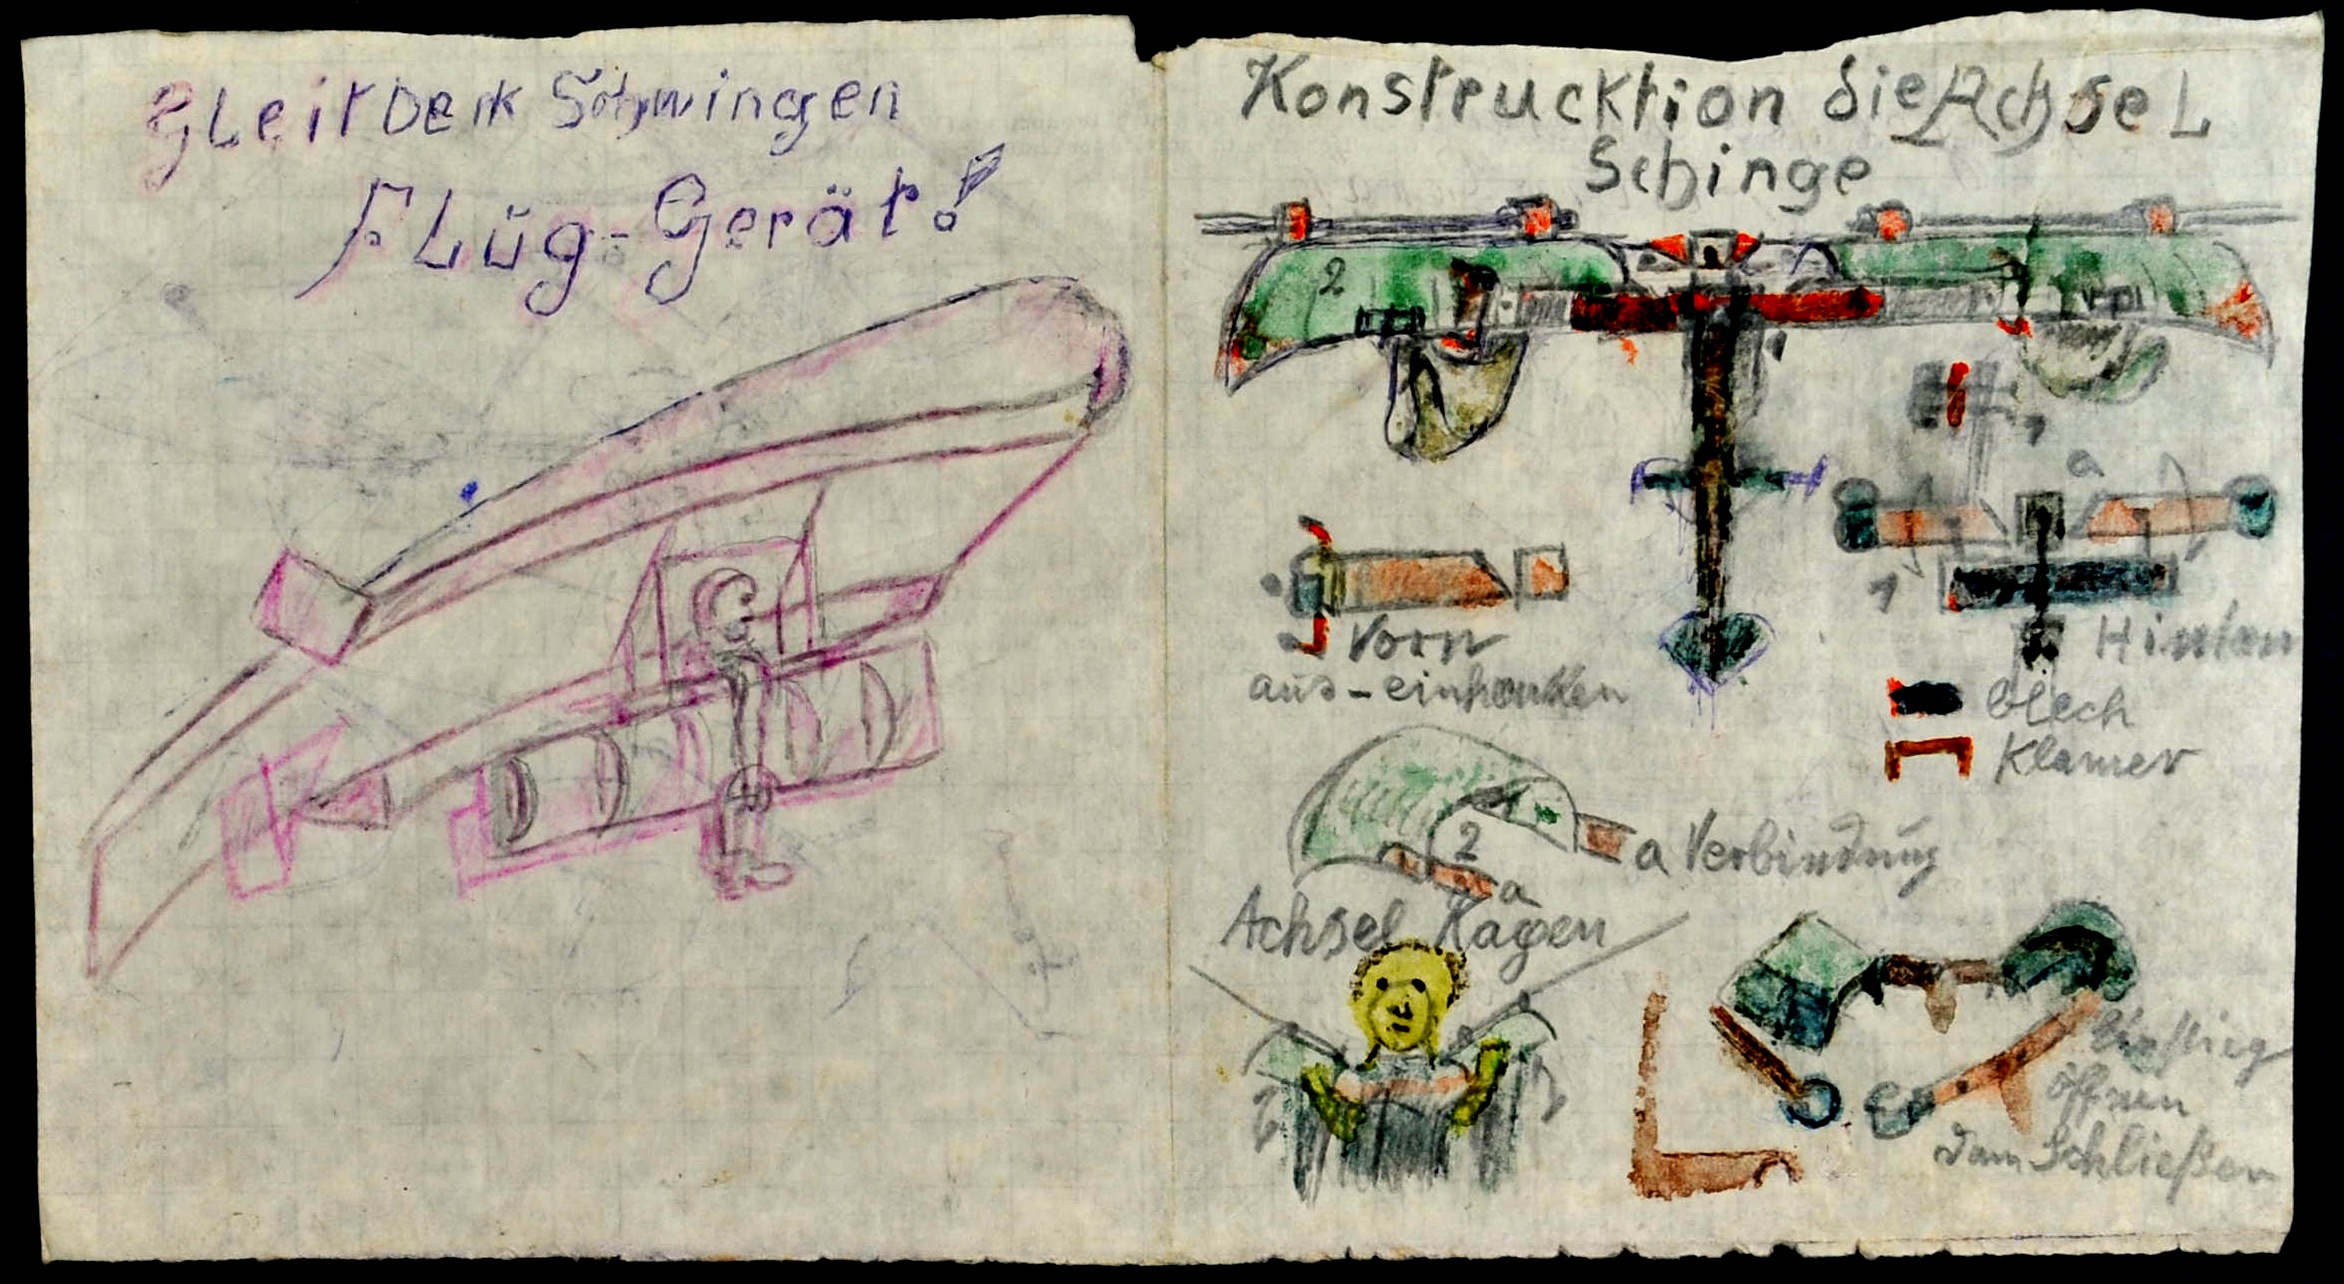 "Gleit Deck Schwingen Flug-Gerät" ; "Konstruktion die Achse L Schinge" ; "Körper Heb Schwinge Fluggerät" (Gustav Mesmer Stiftung CC BY-NC-SA)